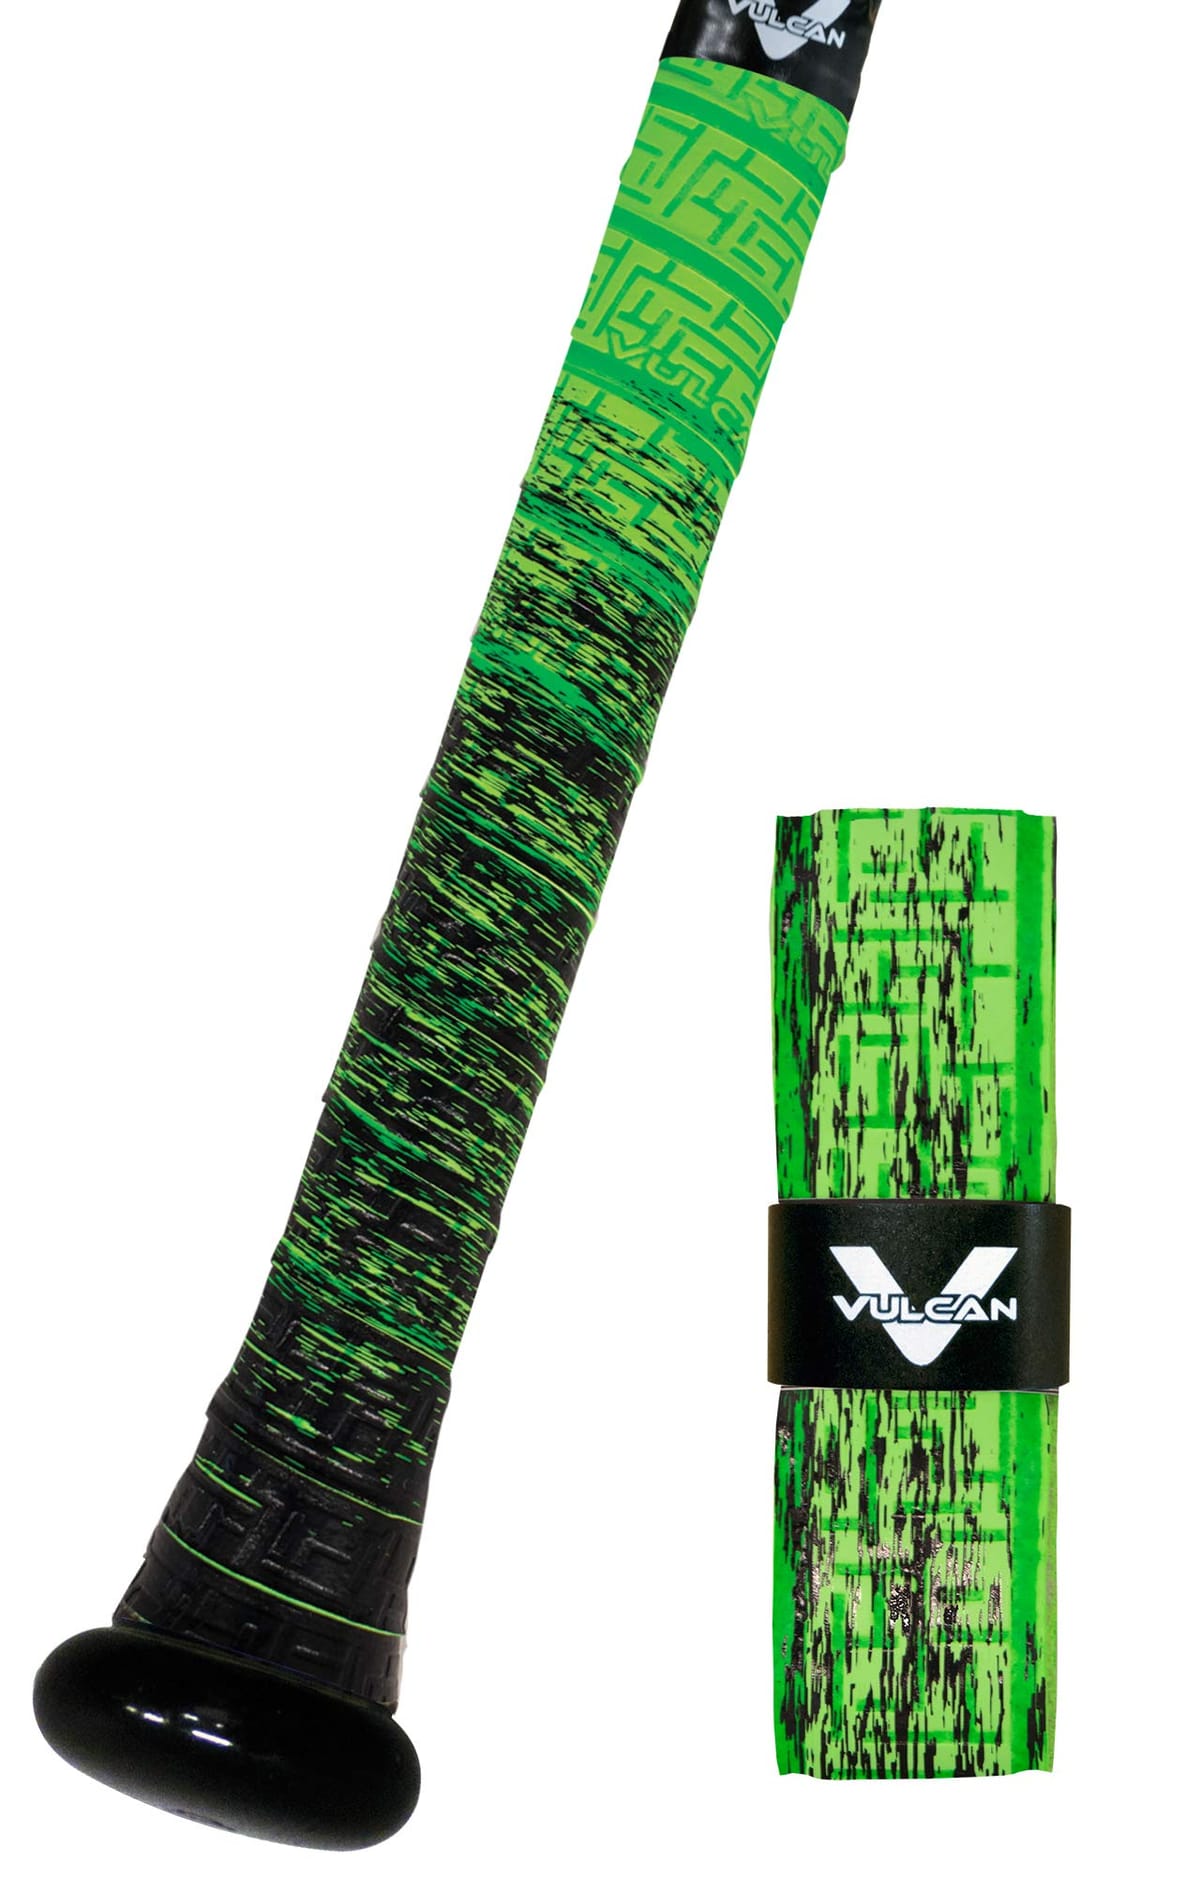 バルカン(Vulcan) VULCAN BATGRIPS バルカンバットグリップ V-050-SLIME Green Slime(グリーンスライム) 0.50mm